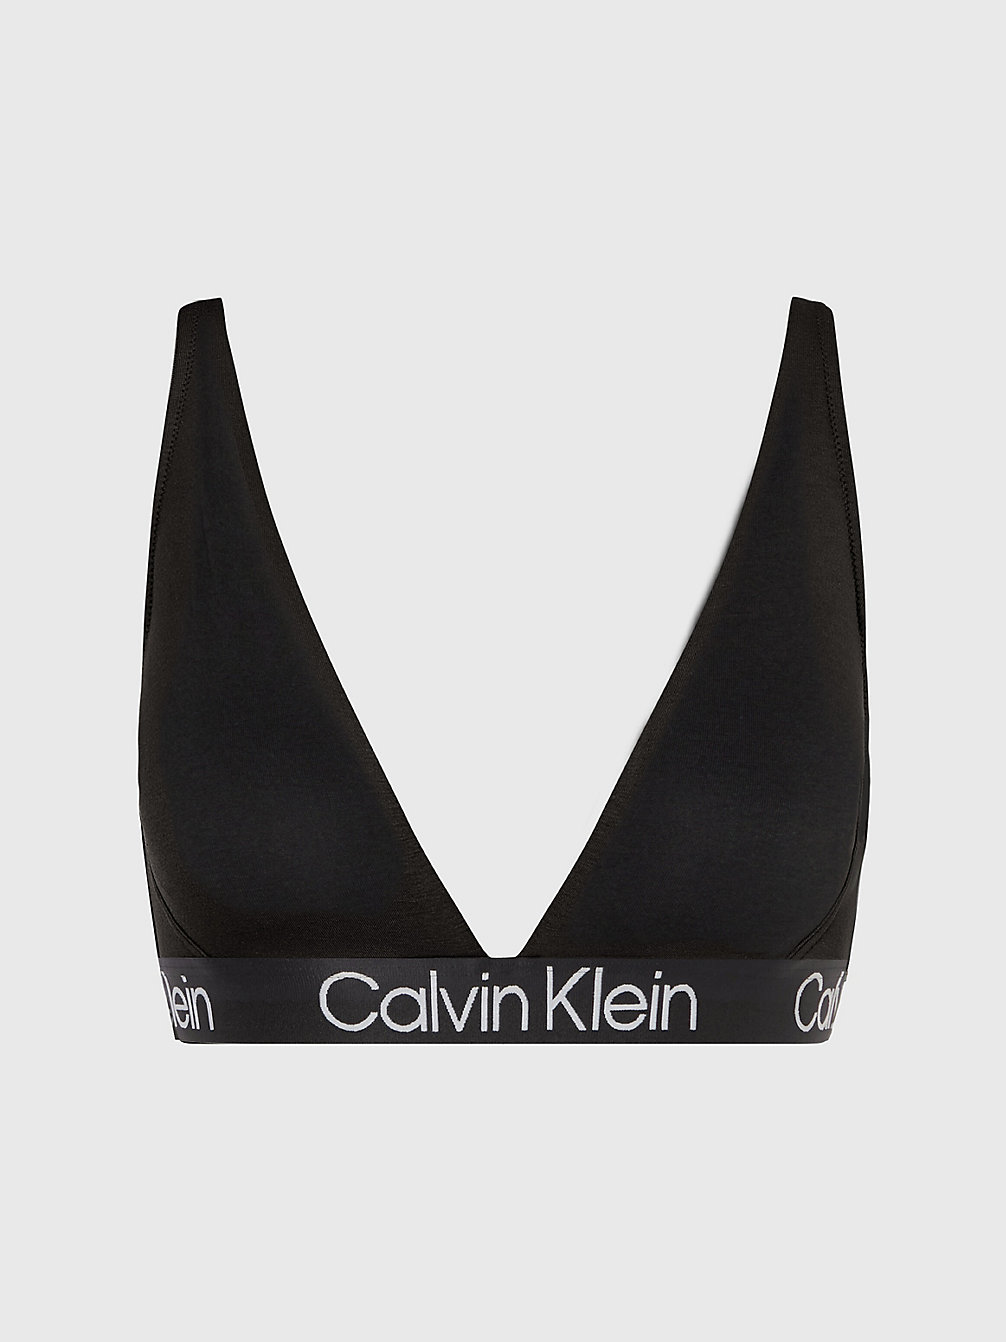 BLACK Triangel-Bh -- Modern Structure undefined Damen Calvin Klein